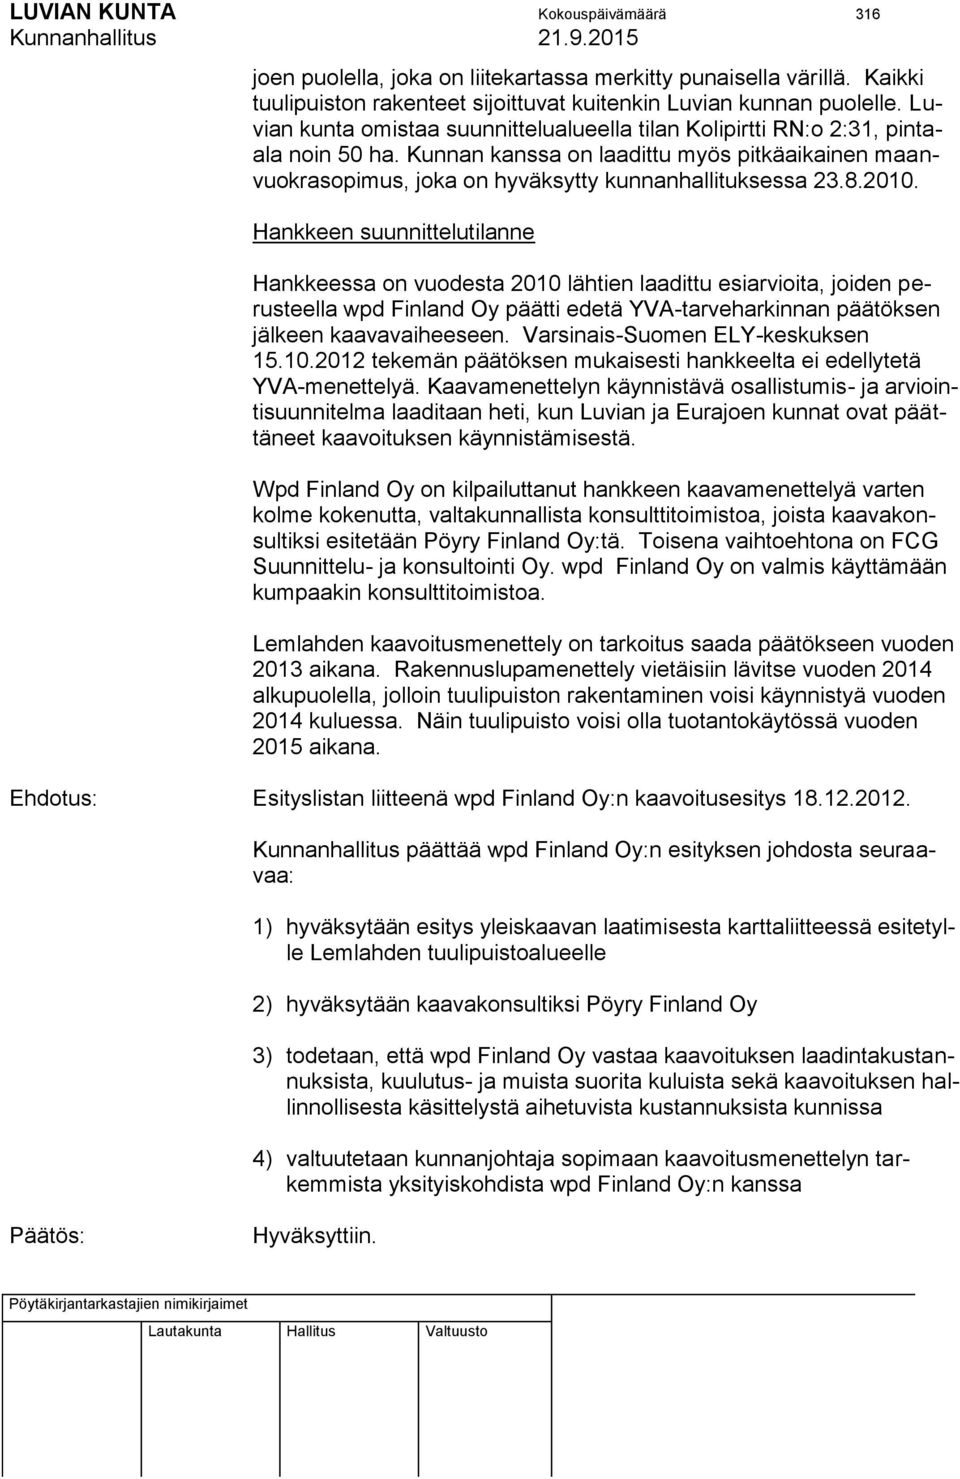 2010. Hankkeen suunnittelutilanne Hankkeessa on vuodesta 2010 lähtien laadittu esiarvioita, joiden perusteella wpd Finland Oy päätti edetä YVA-tarveharkinnan päätöksen jälkeen kaavavaiheeseen.